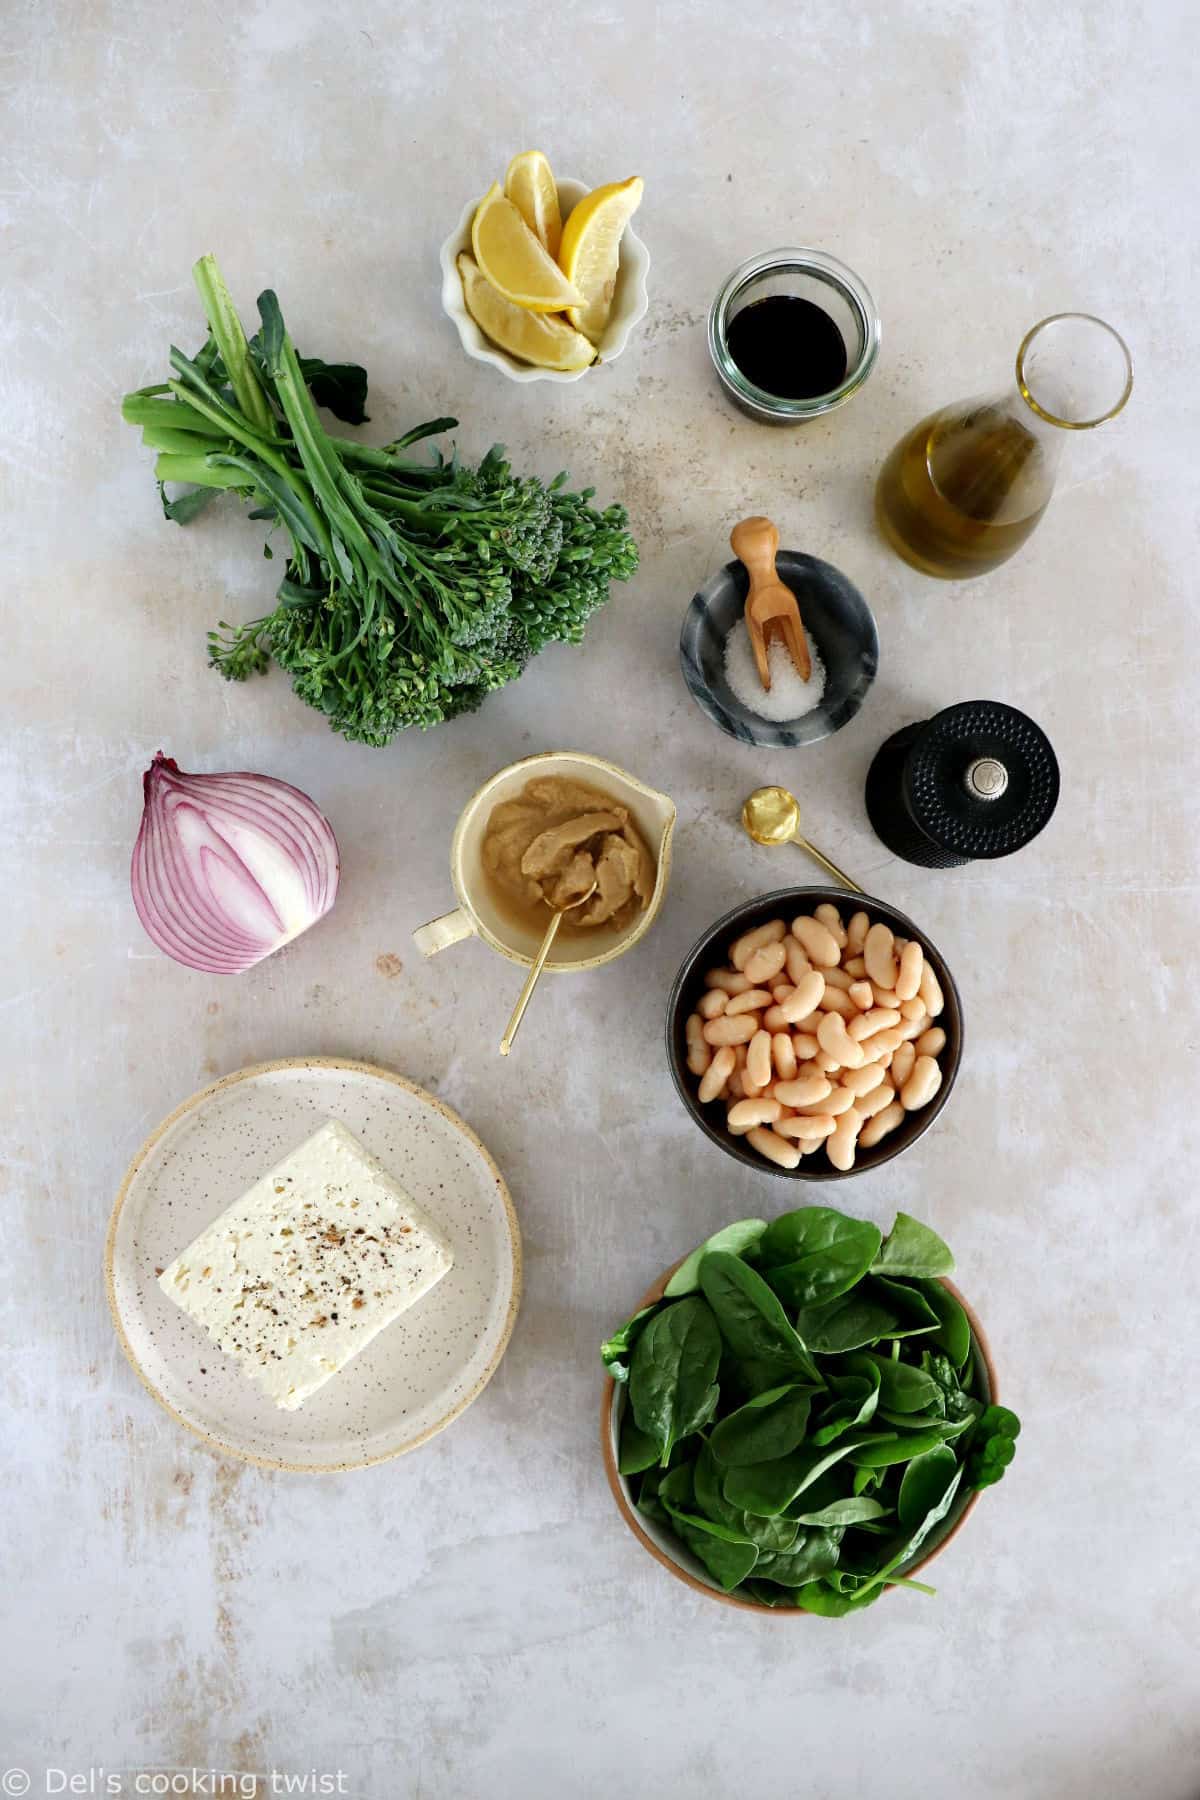 Retrouvez dans cette salade de brocolis, haricots blancs et feta des saveurs simples et des ingrédients assaisonnés avec soin.